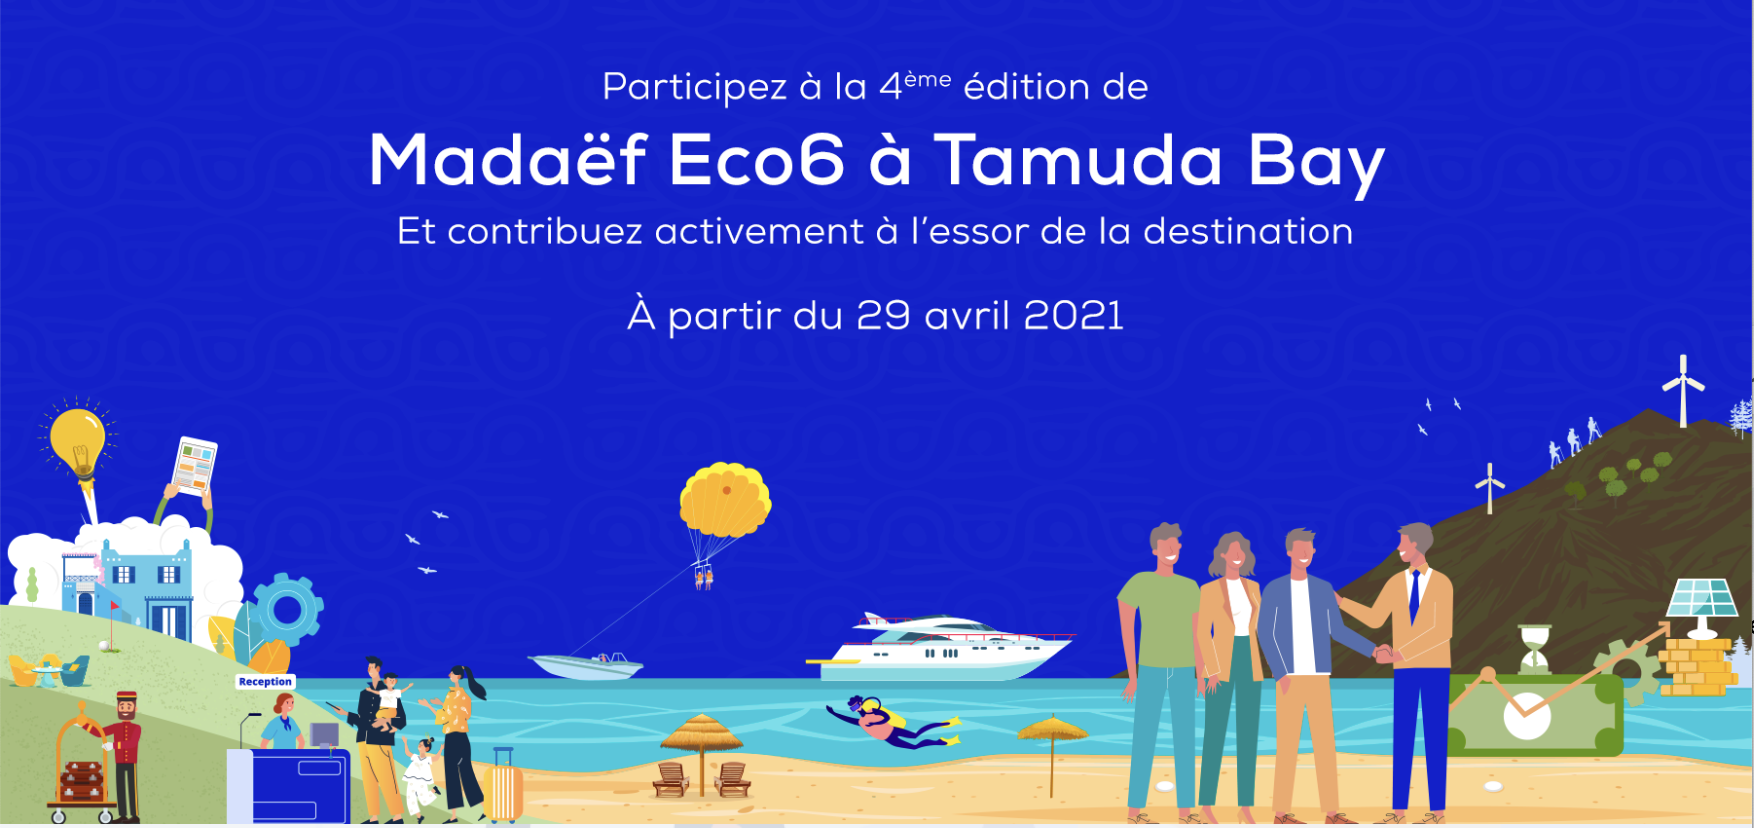 Programme Madaëf Eco6 à Tamuda Bay: Madaëf annonce le lancement de l’appel à projets de la 4ème édition